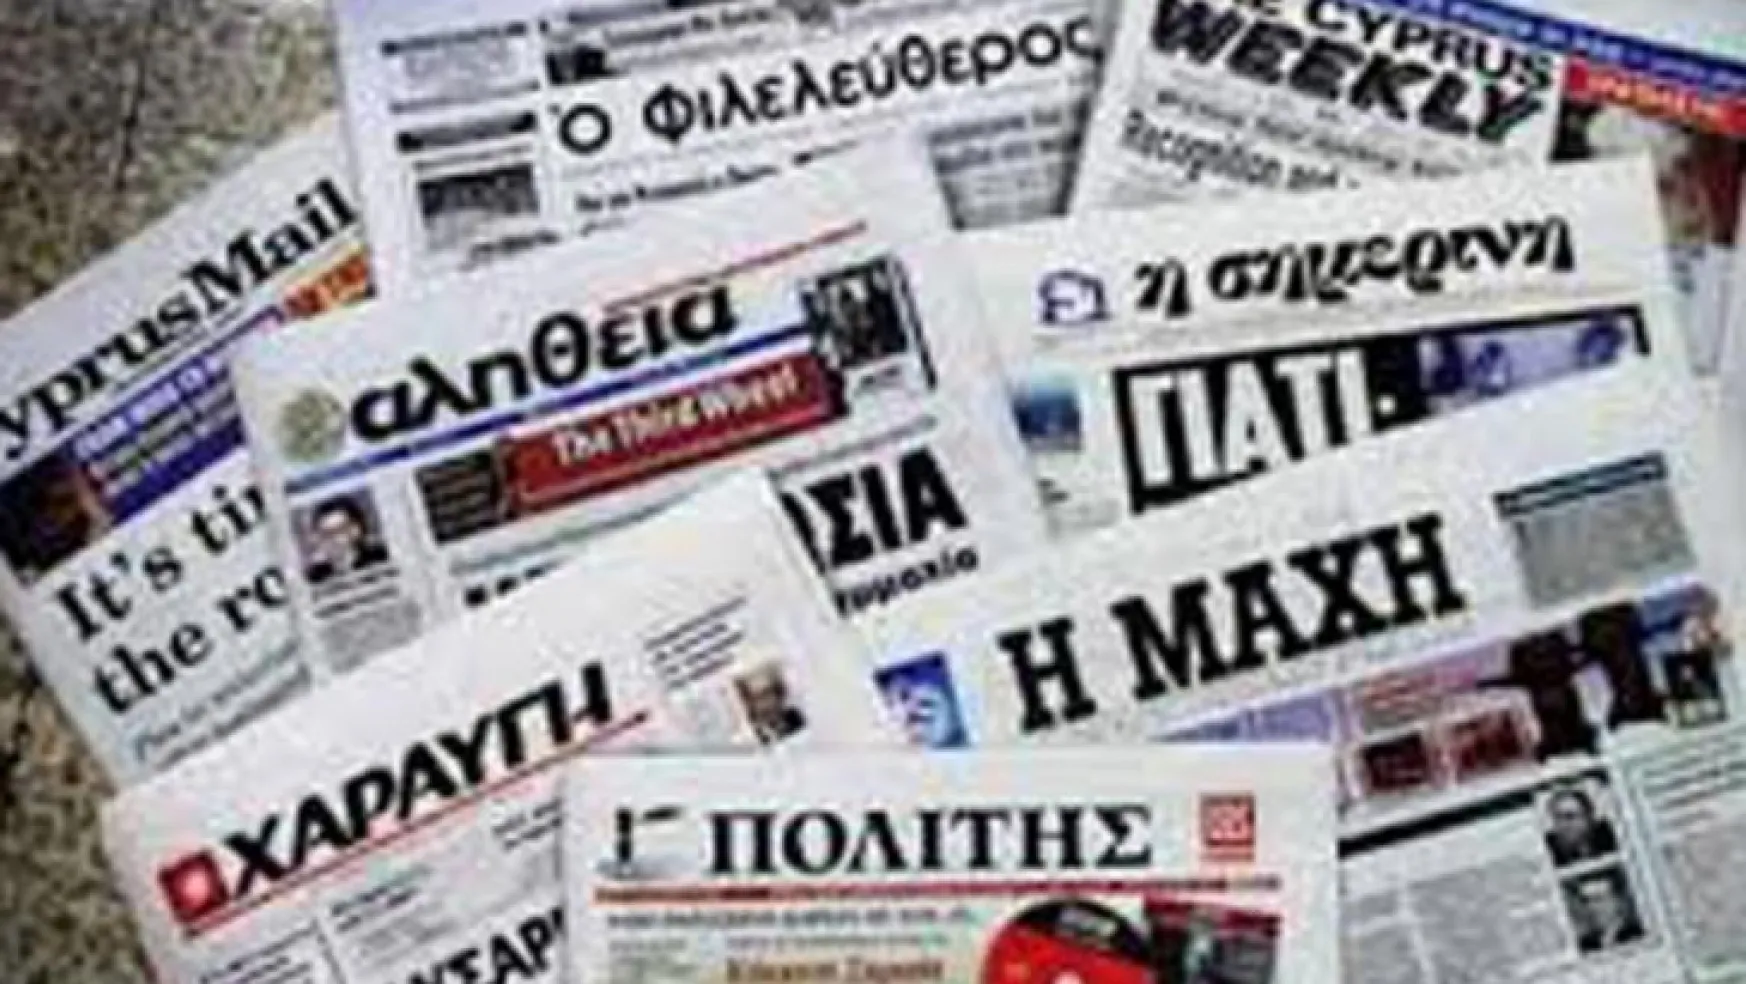 Yunan medyasının gündemi Türkiye